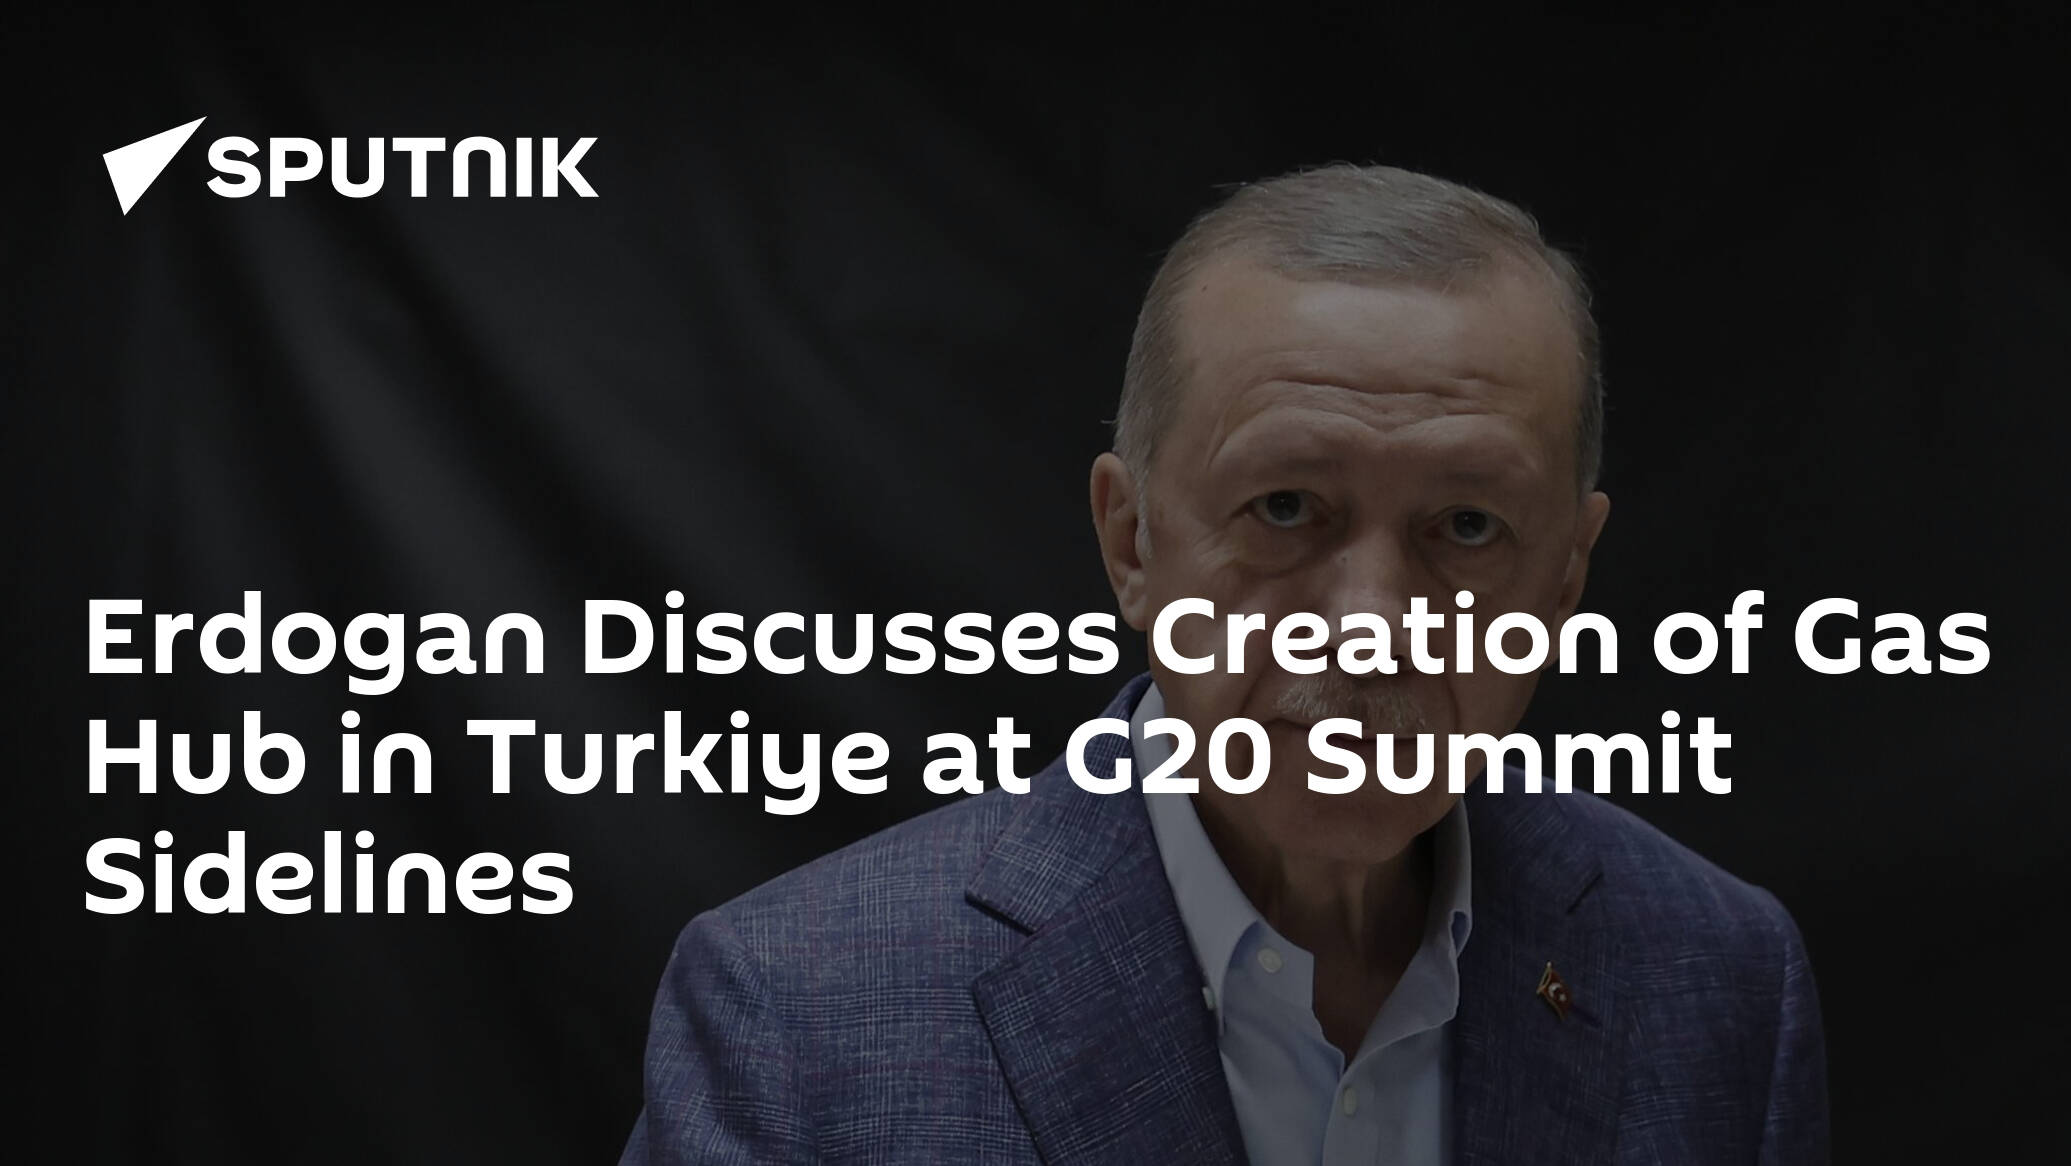 Erdogan Discusses Creation of Gas Hub in Turkiye at G20 Summit Sidelines